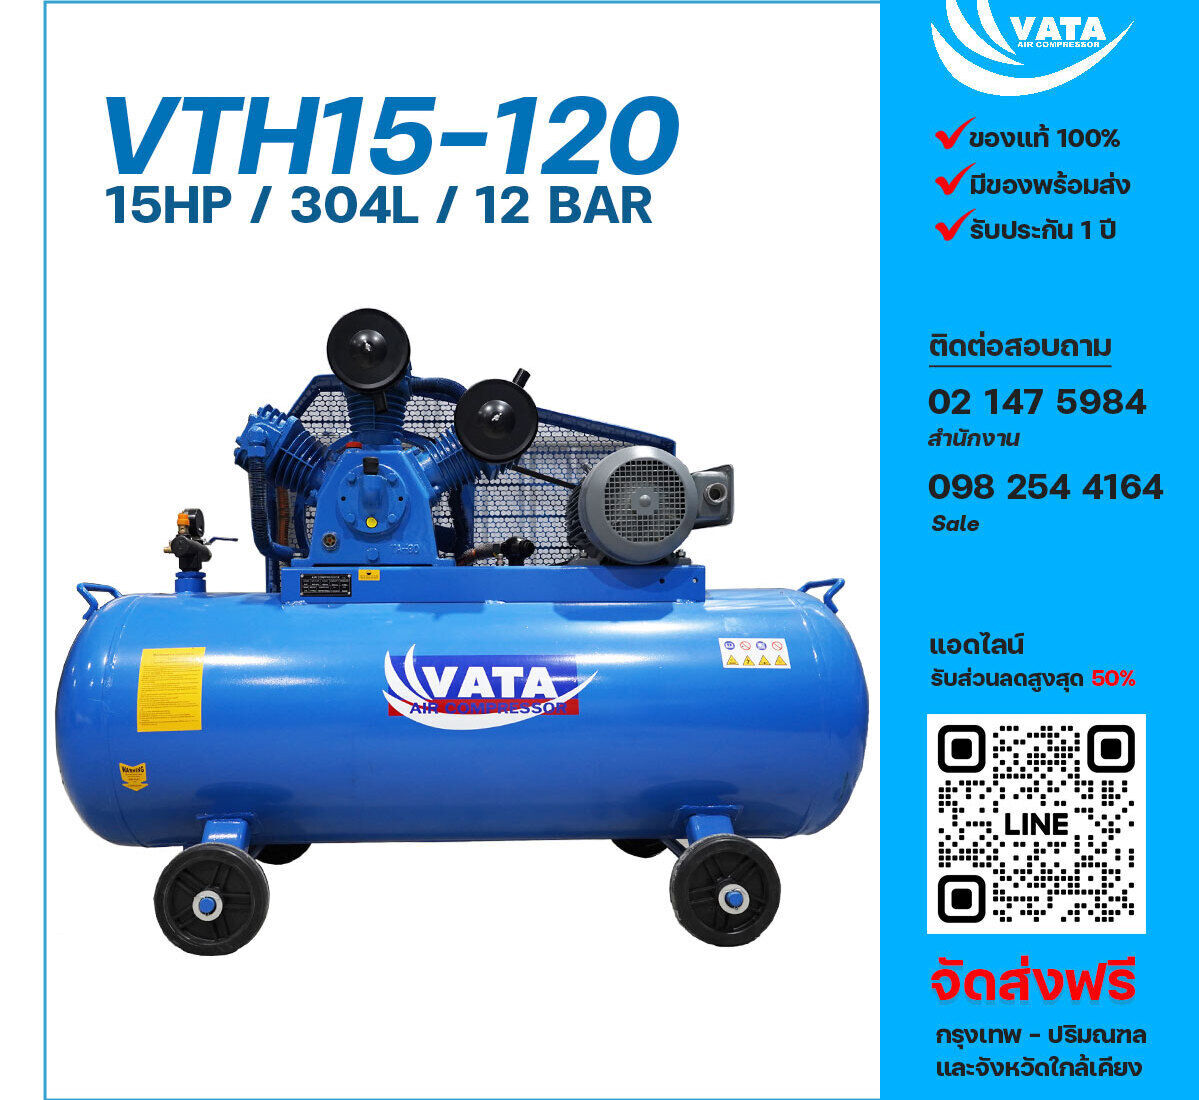 ปั๊มลมวาตะแรงดันสูง VATA Two-Stage VTH15-120 380V ปั๊มลมลูกสูบ ขนาด 3 สูบ 15 แรงม้า 304 ลิตร VATA พร้อมมอเตอร์ ไฟ 380V ส่งฟรี กรุงเทพฯ-ปริมณฑล รับประกัน 1 ปี